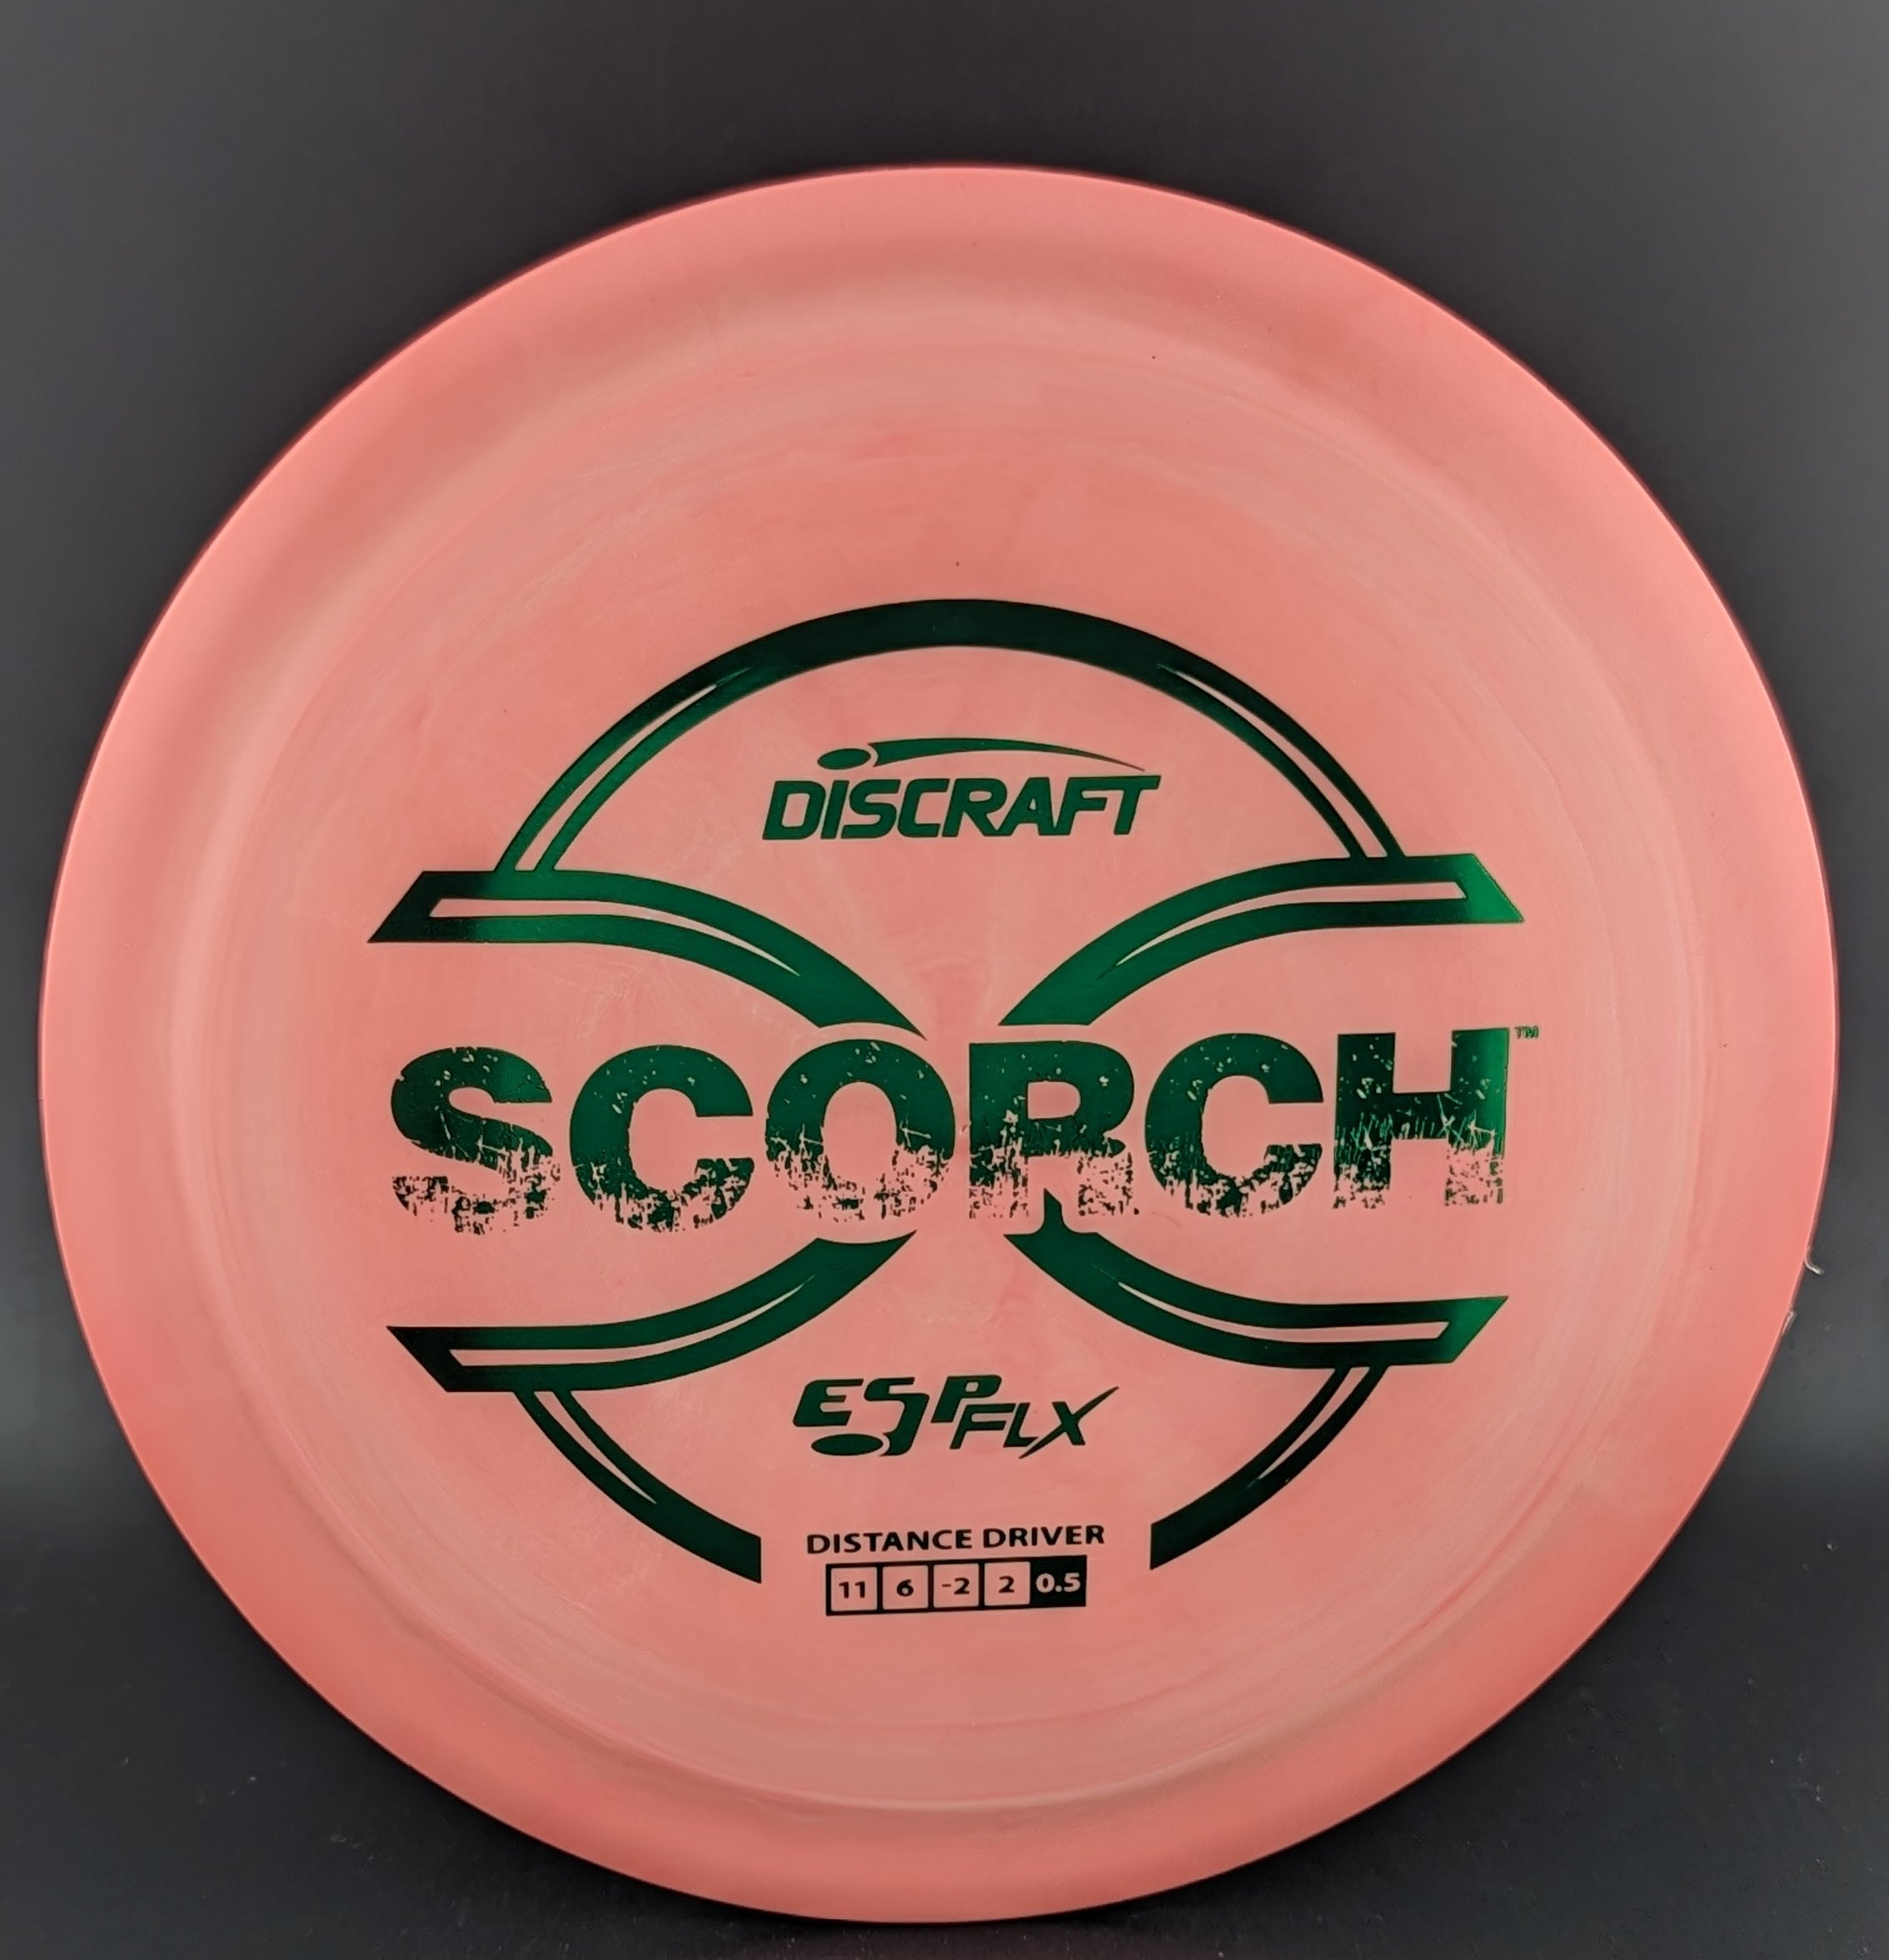 Discraft ESP Flx Scorch-2